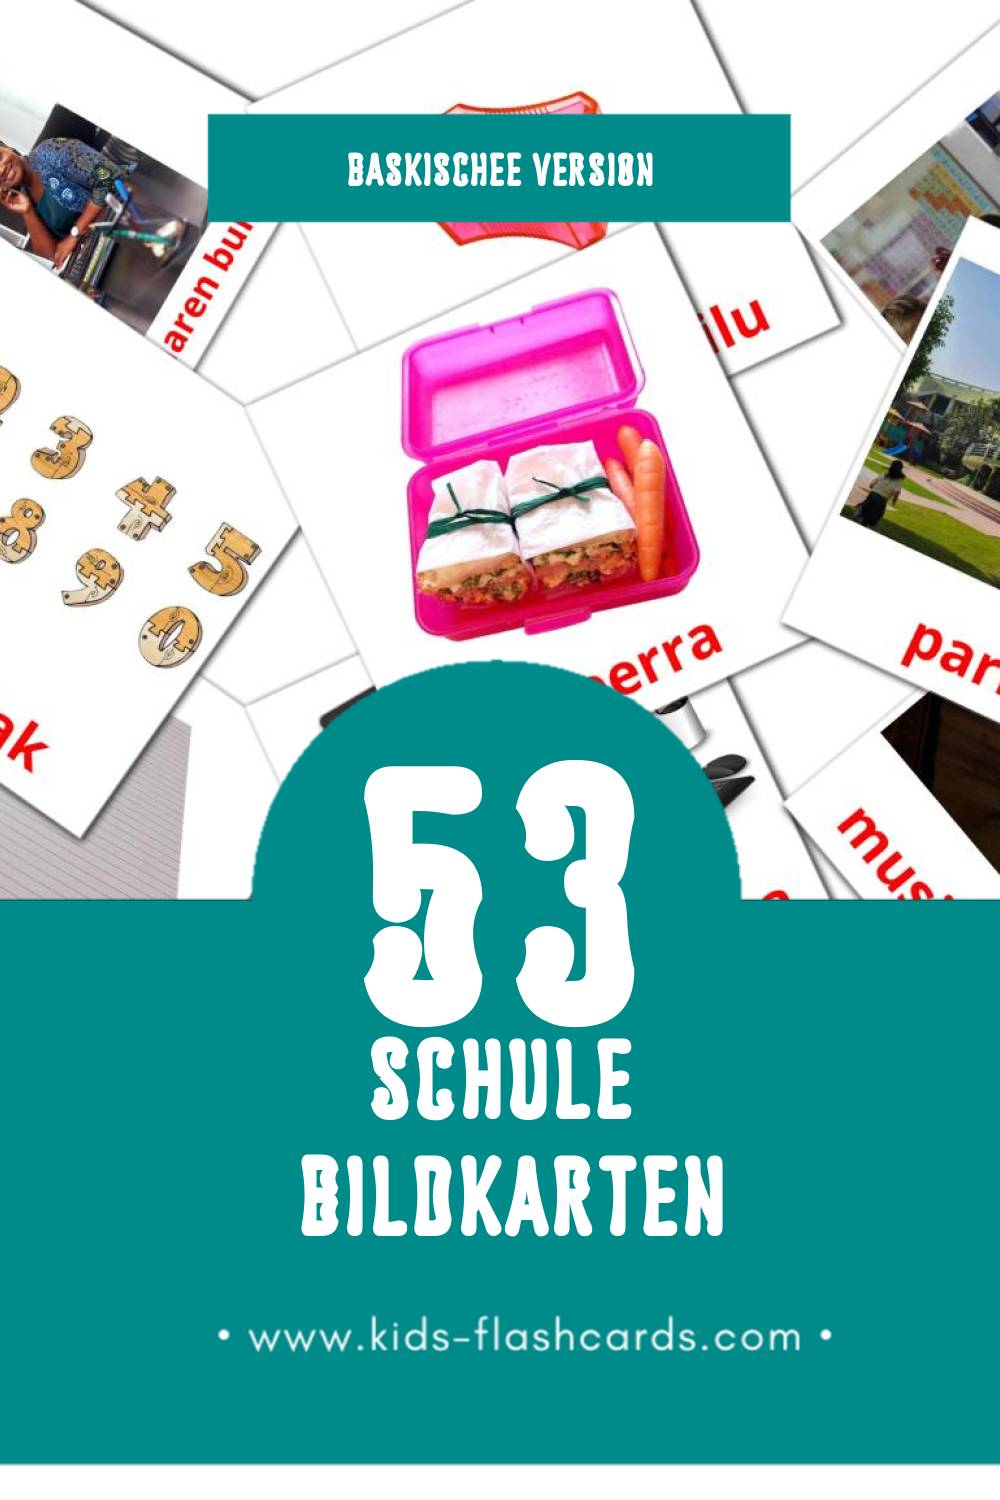 Visual Eskola Flashcards für Kleinkinder (53 Karten in Baskische)